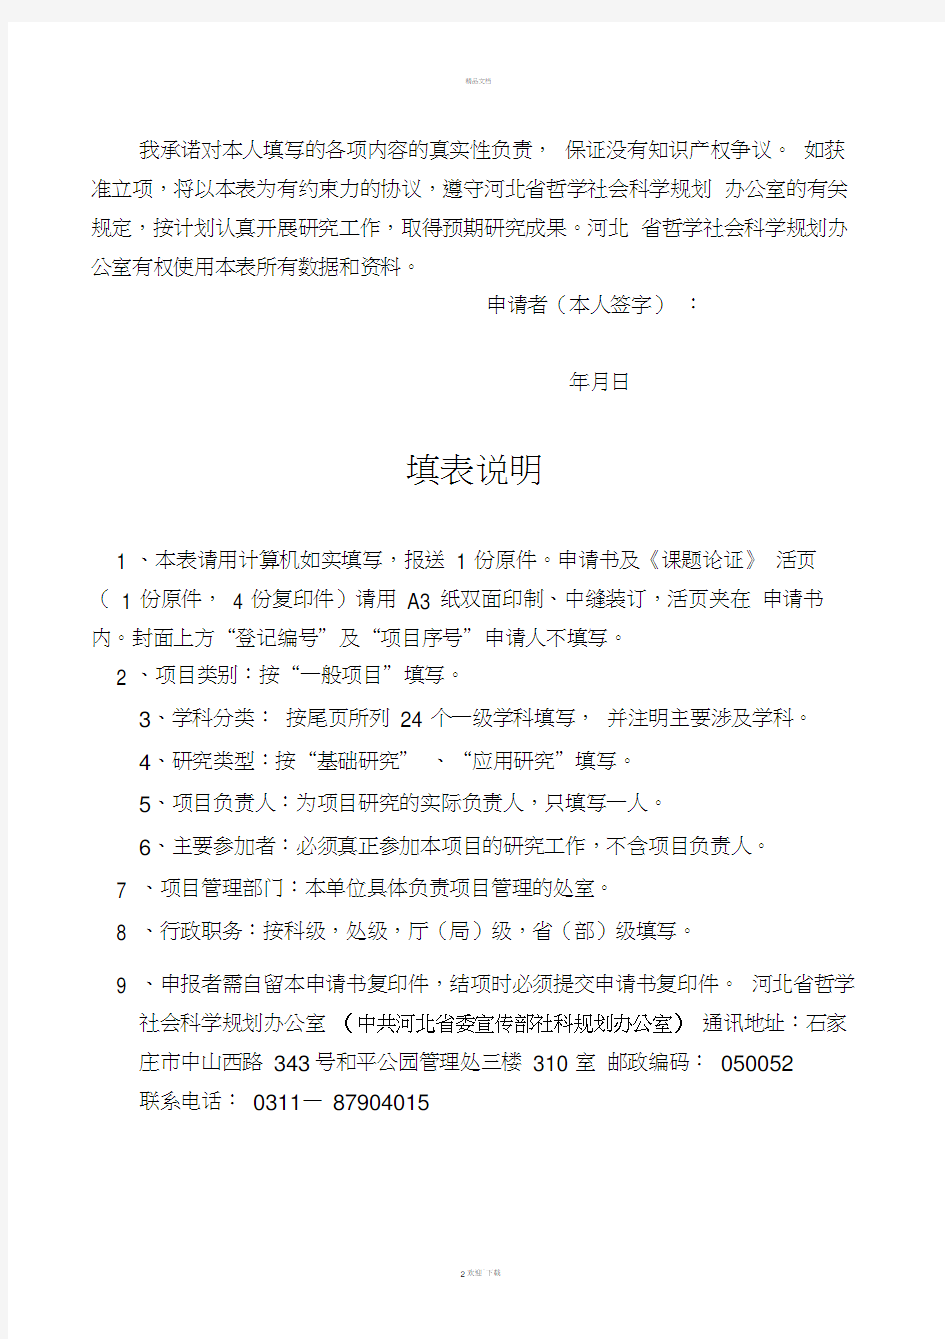 河北科技大学-1年省社科基金申报书最新版